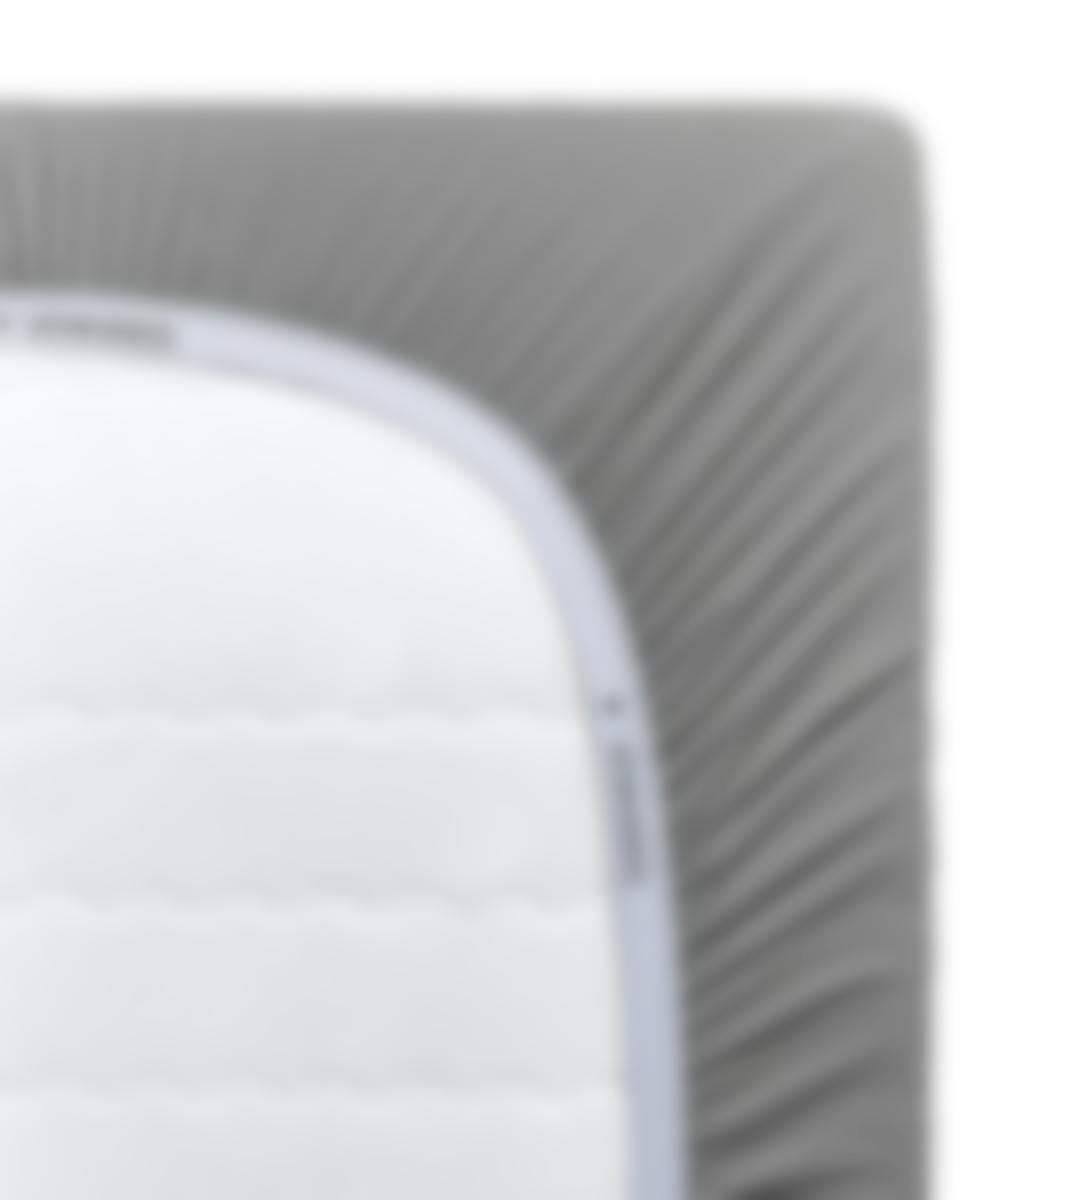 VTwonen hoeslaken Cover Grey katoenjersey (hoek 35 cm) 180-200 x 200-220 cm